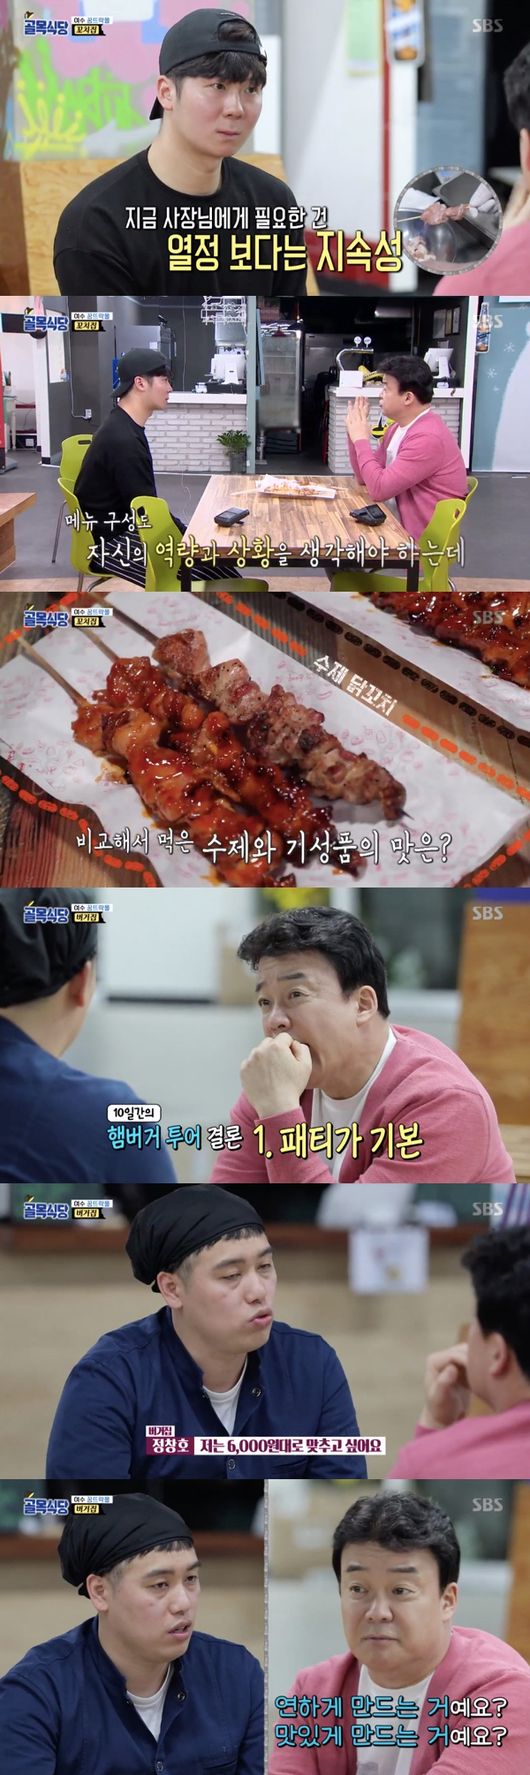 SBS '백종원의 골목식당' 방송화면 캡처